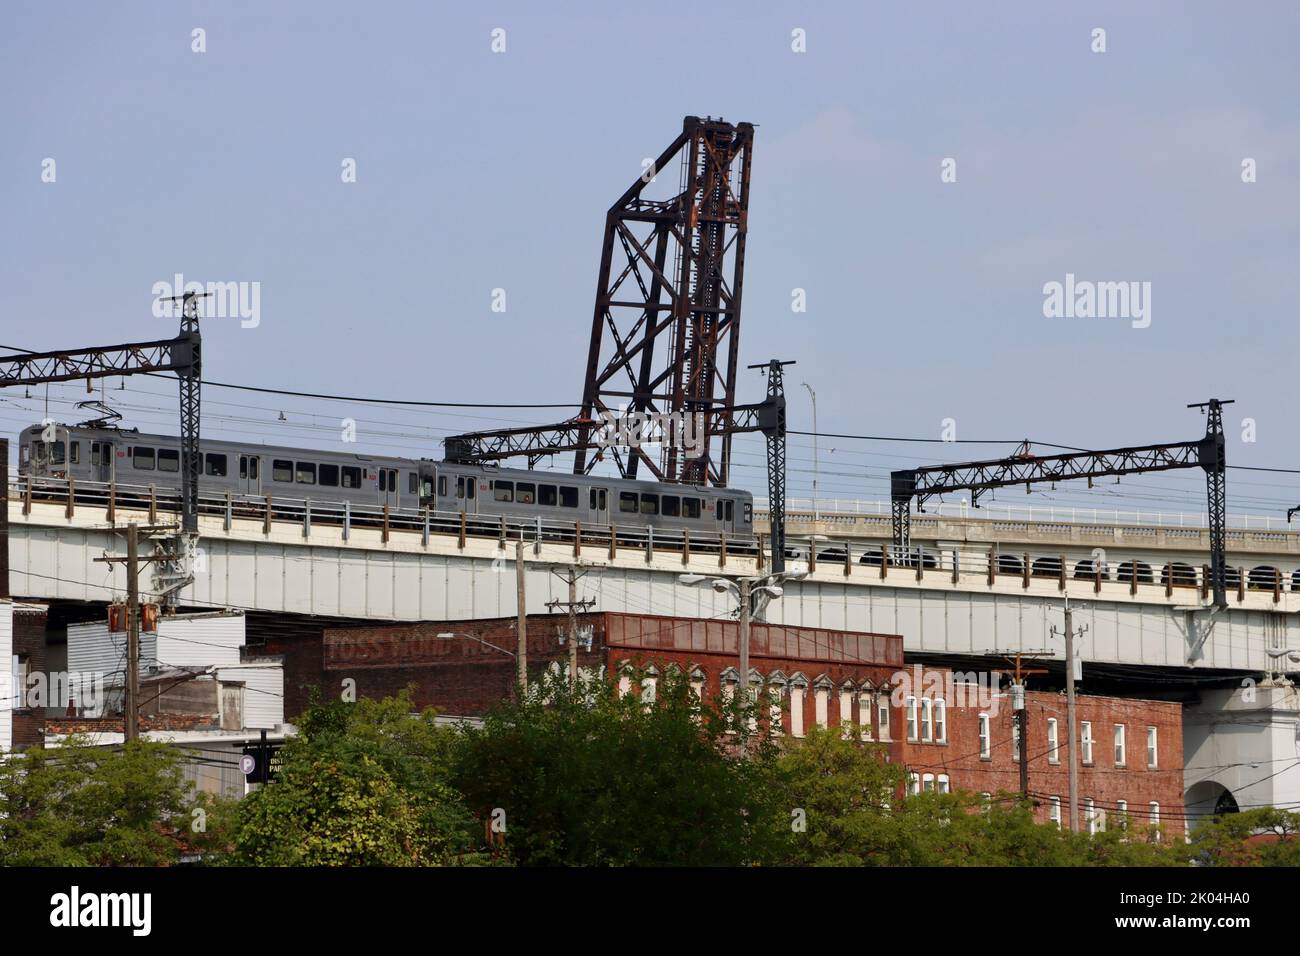 Le train RTA de Cleveland sur le pont au-dessus de la rivière Cuyahoga Banque D'Images